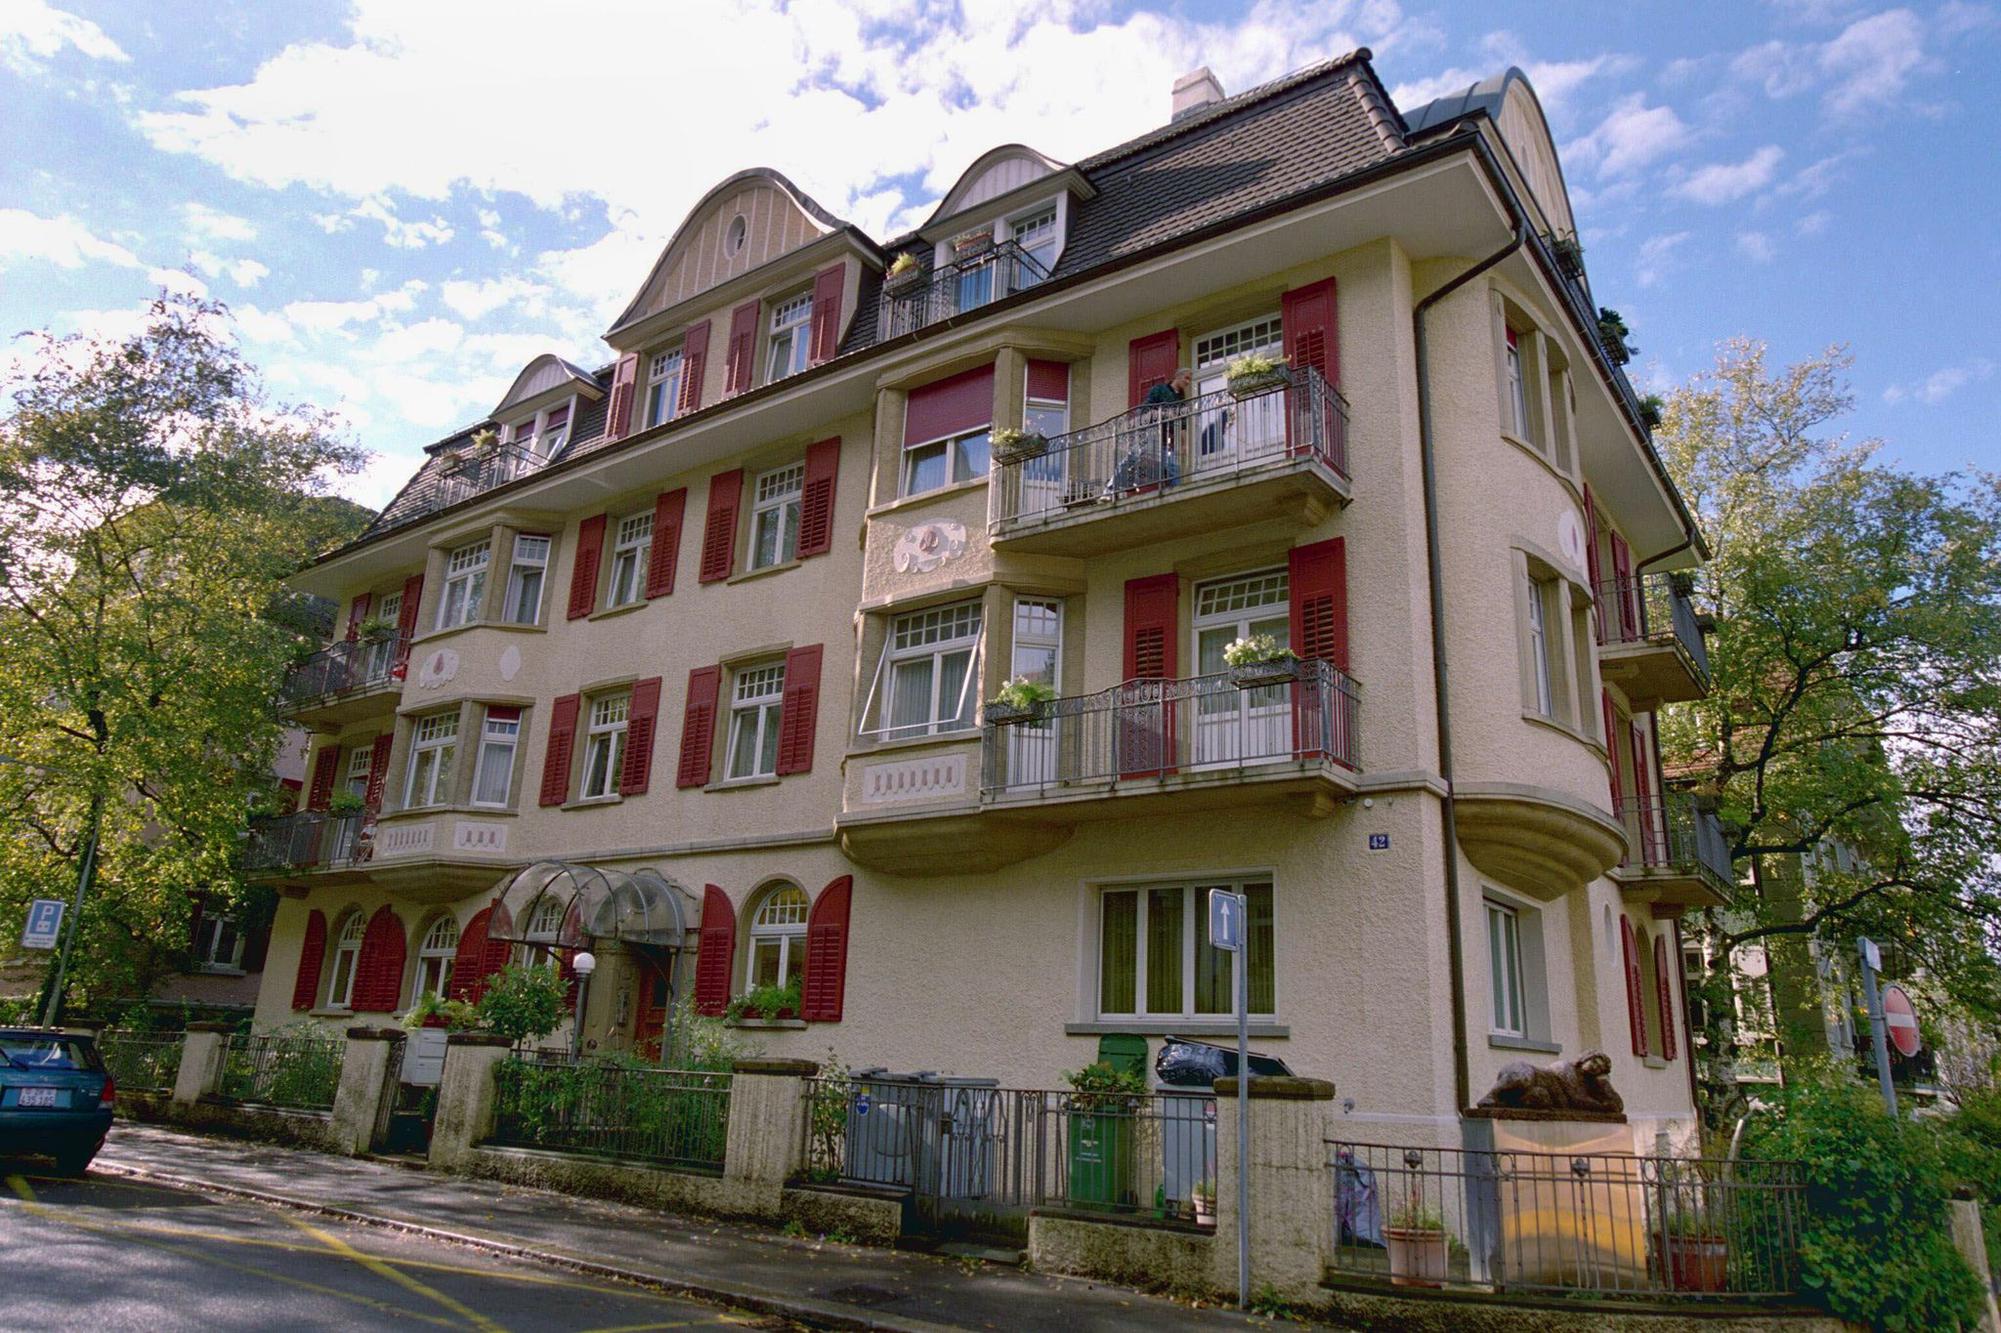 Hier war das Lighthouse 30 Jahre lang zuhause: Carmenstrasse in Zürich 7. Foto: Archiv TA